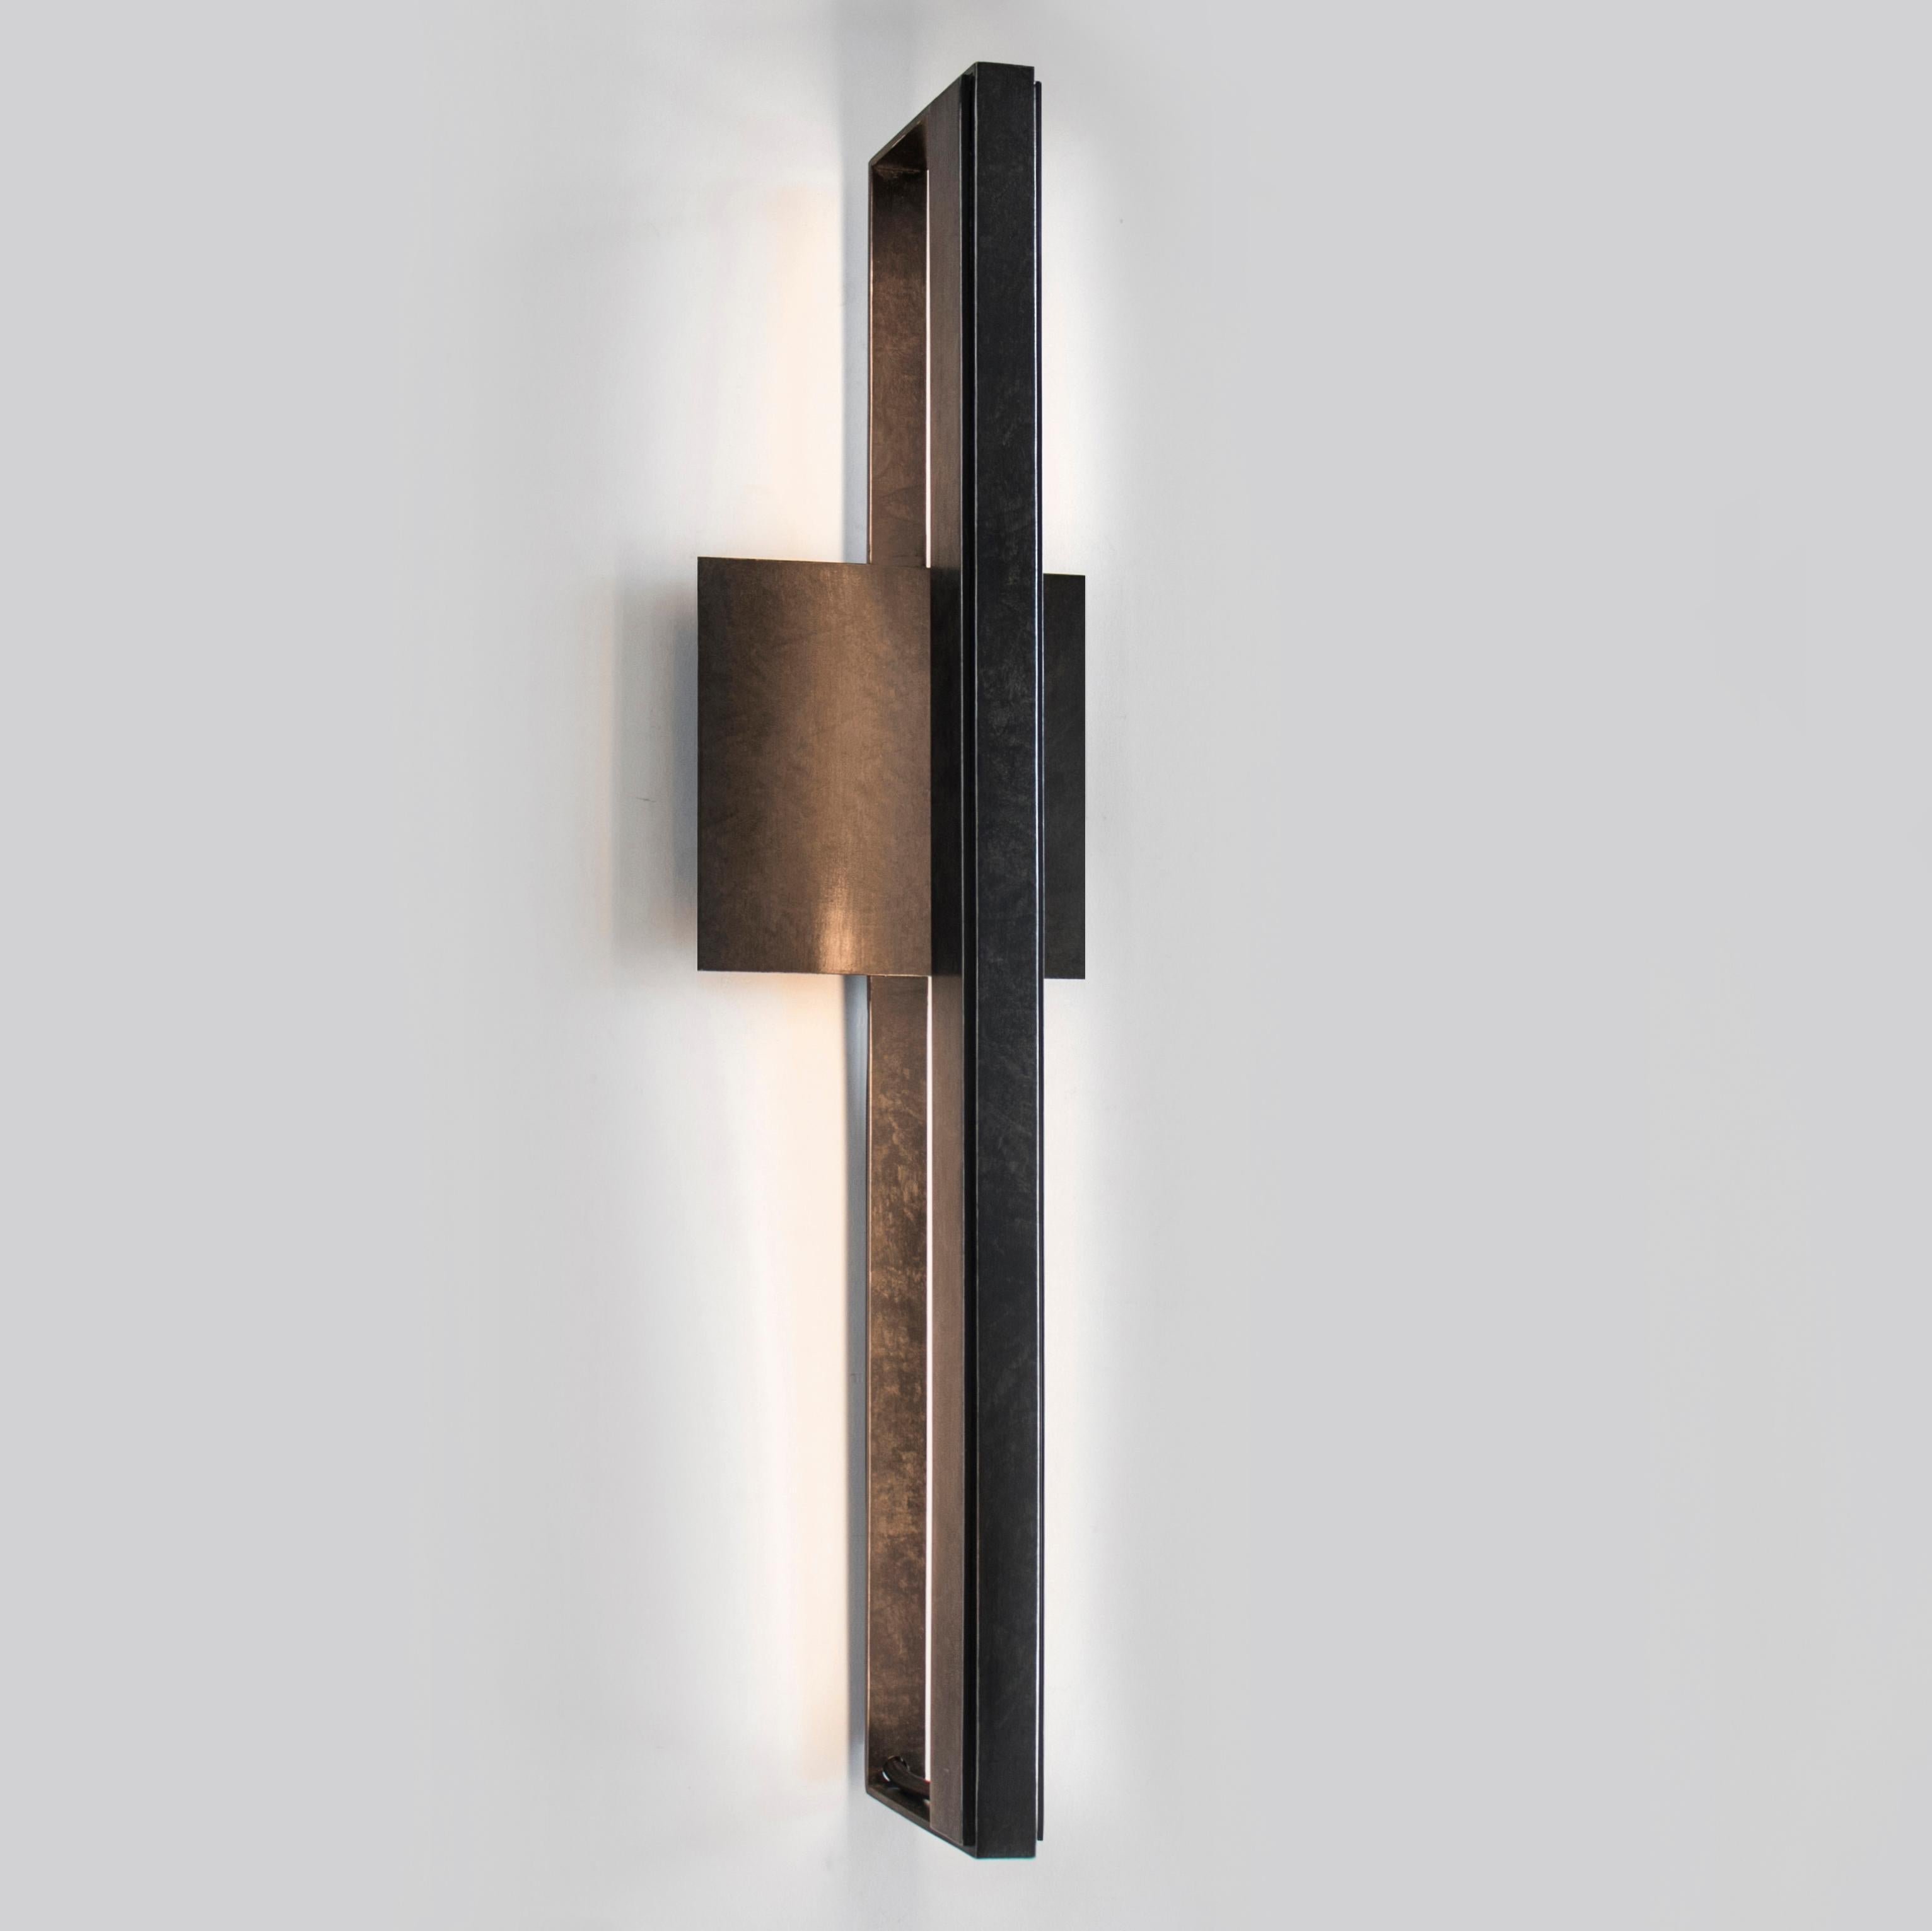 L'applique de bar est un luminaire élégant en acier laminé à froid, avec une source de lumière LED. La simplicité de l'applique en fait un choix parfait pour les vanités de salle de bains, les salles à manger, les salons, les chambres principales et